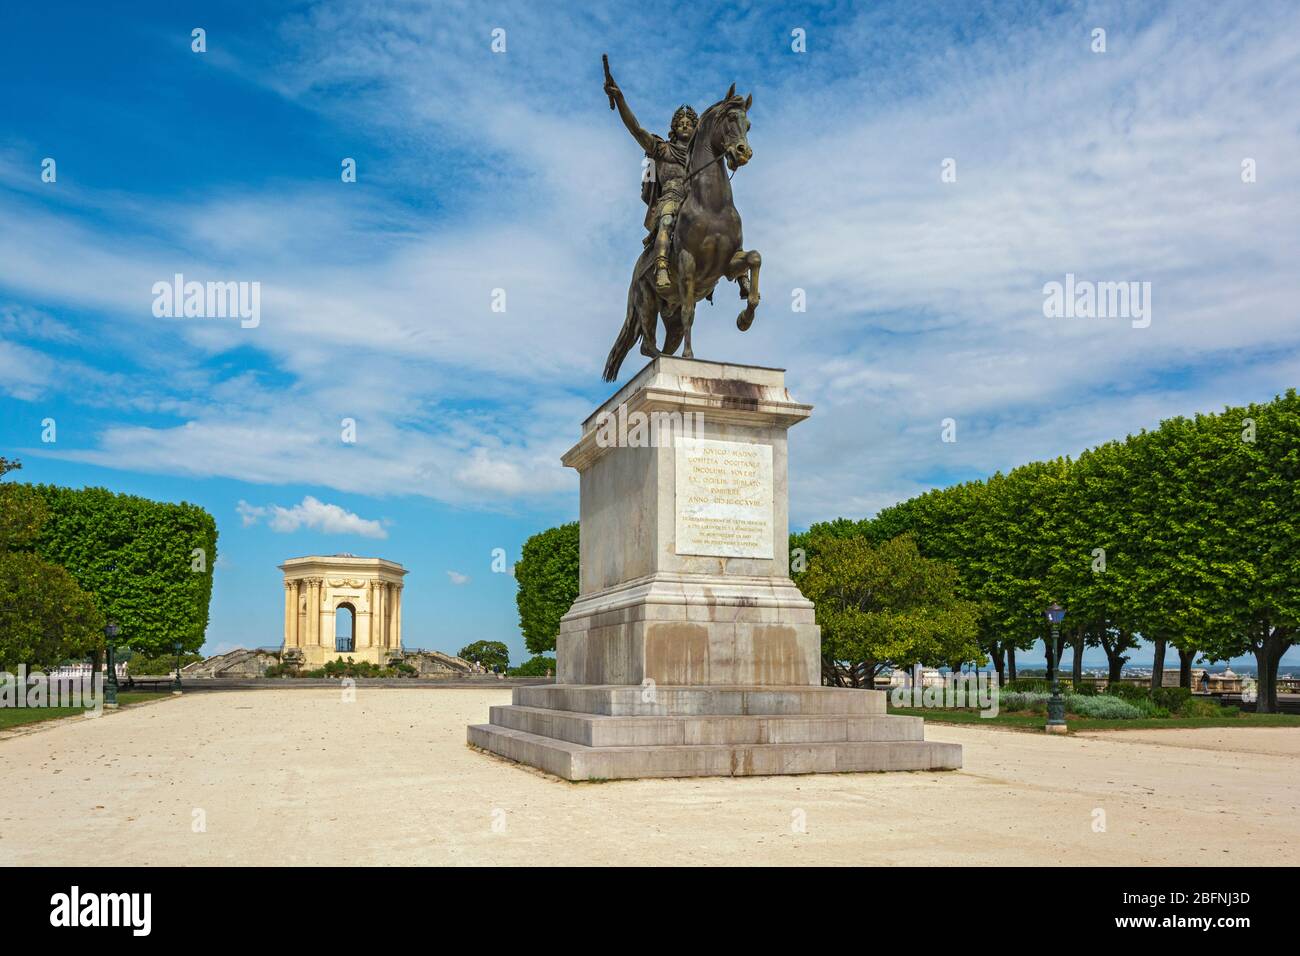 France, Montpellier, Place Royale du Peyrou, Louis XIV statue, 18C water tower (Le chateau d'eau) Stock Photo